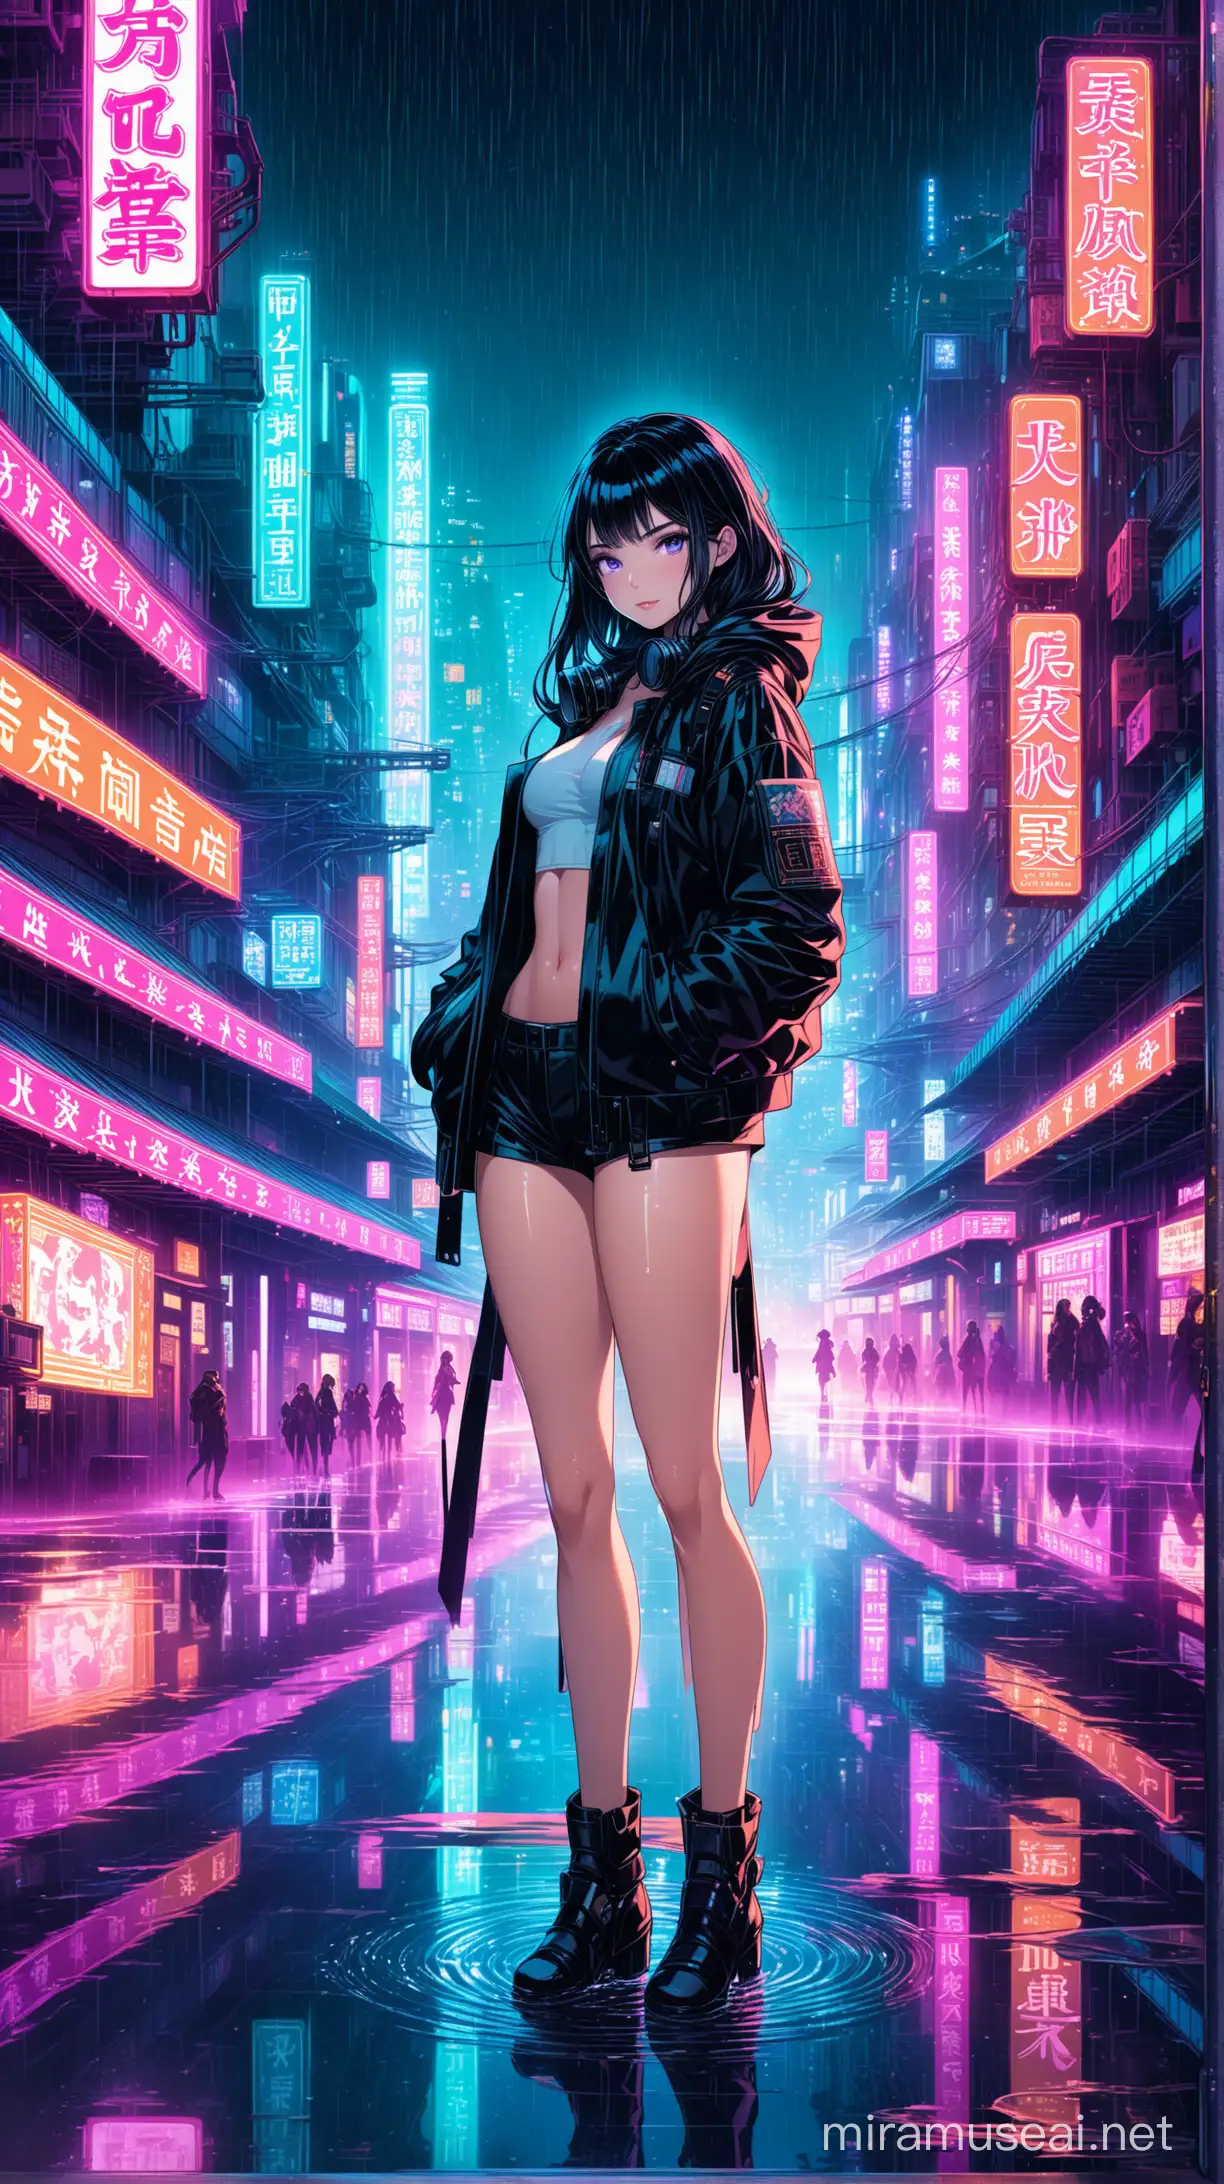 Futuristic Cyberpunk Anime School Girl in Gas Mask amid Neon Cityscape